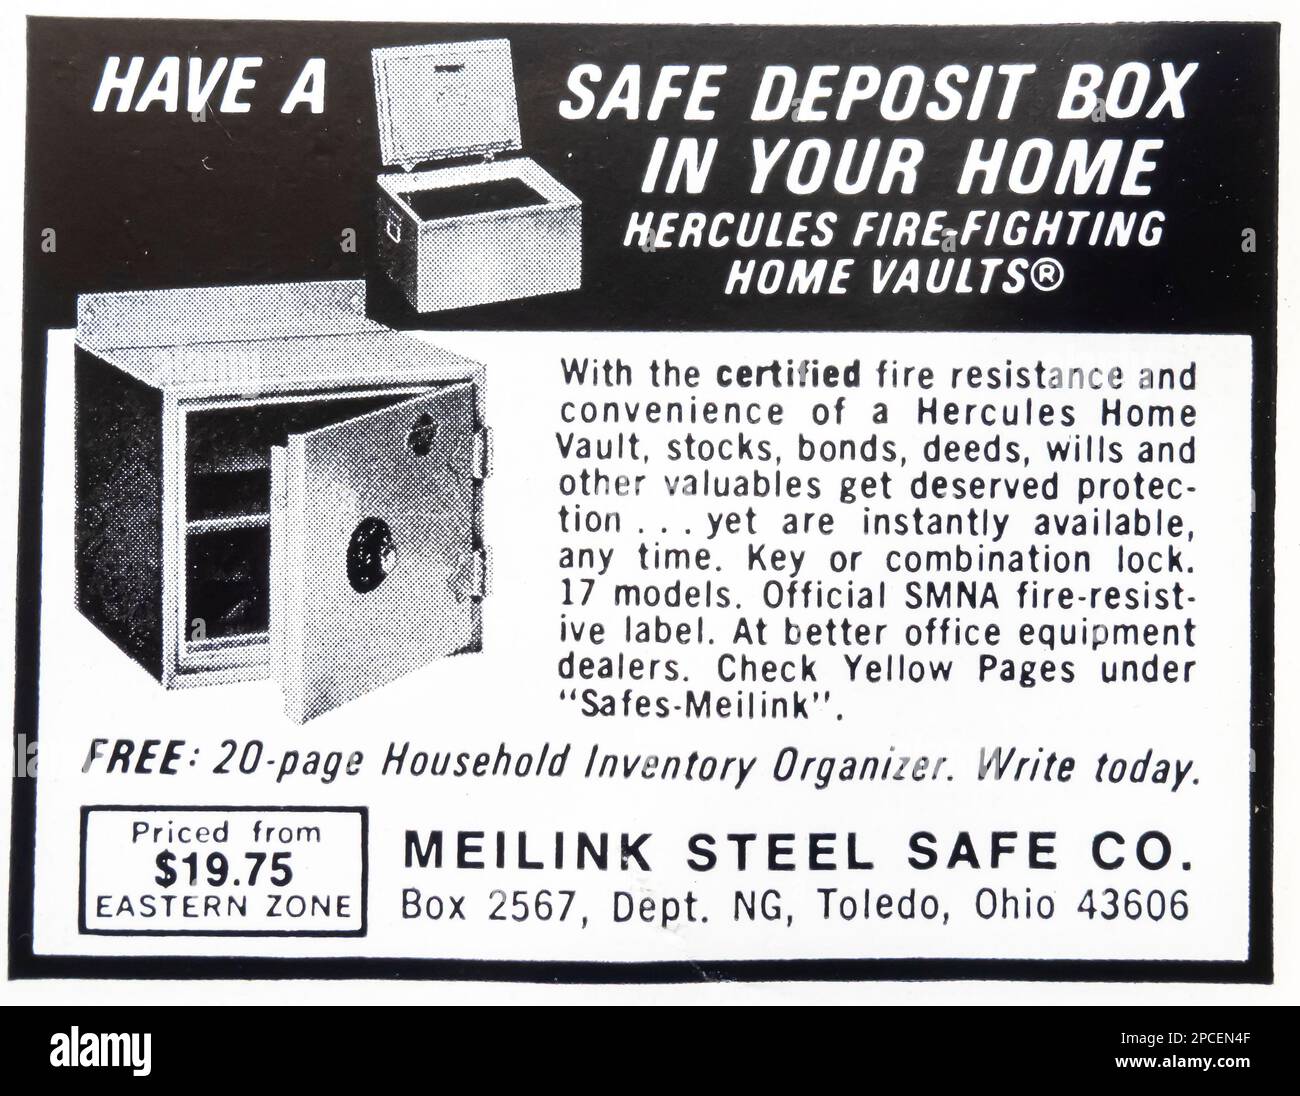 Meilink Steel Safe Werbespot in einem NatGeo Magazin Juni 1969 Stockfoto